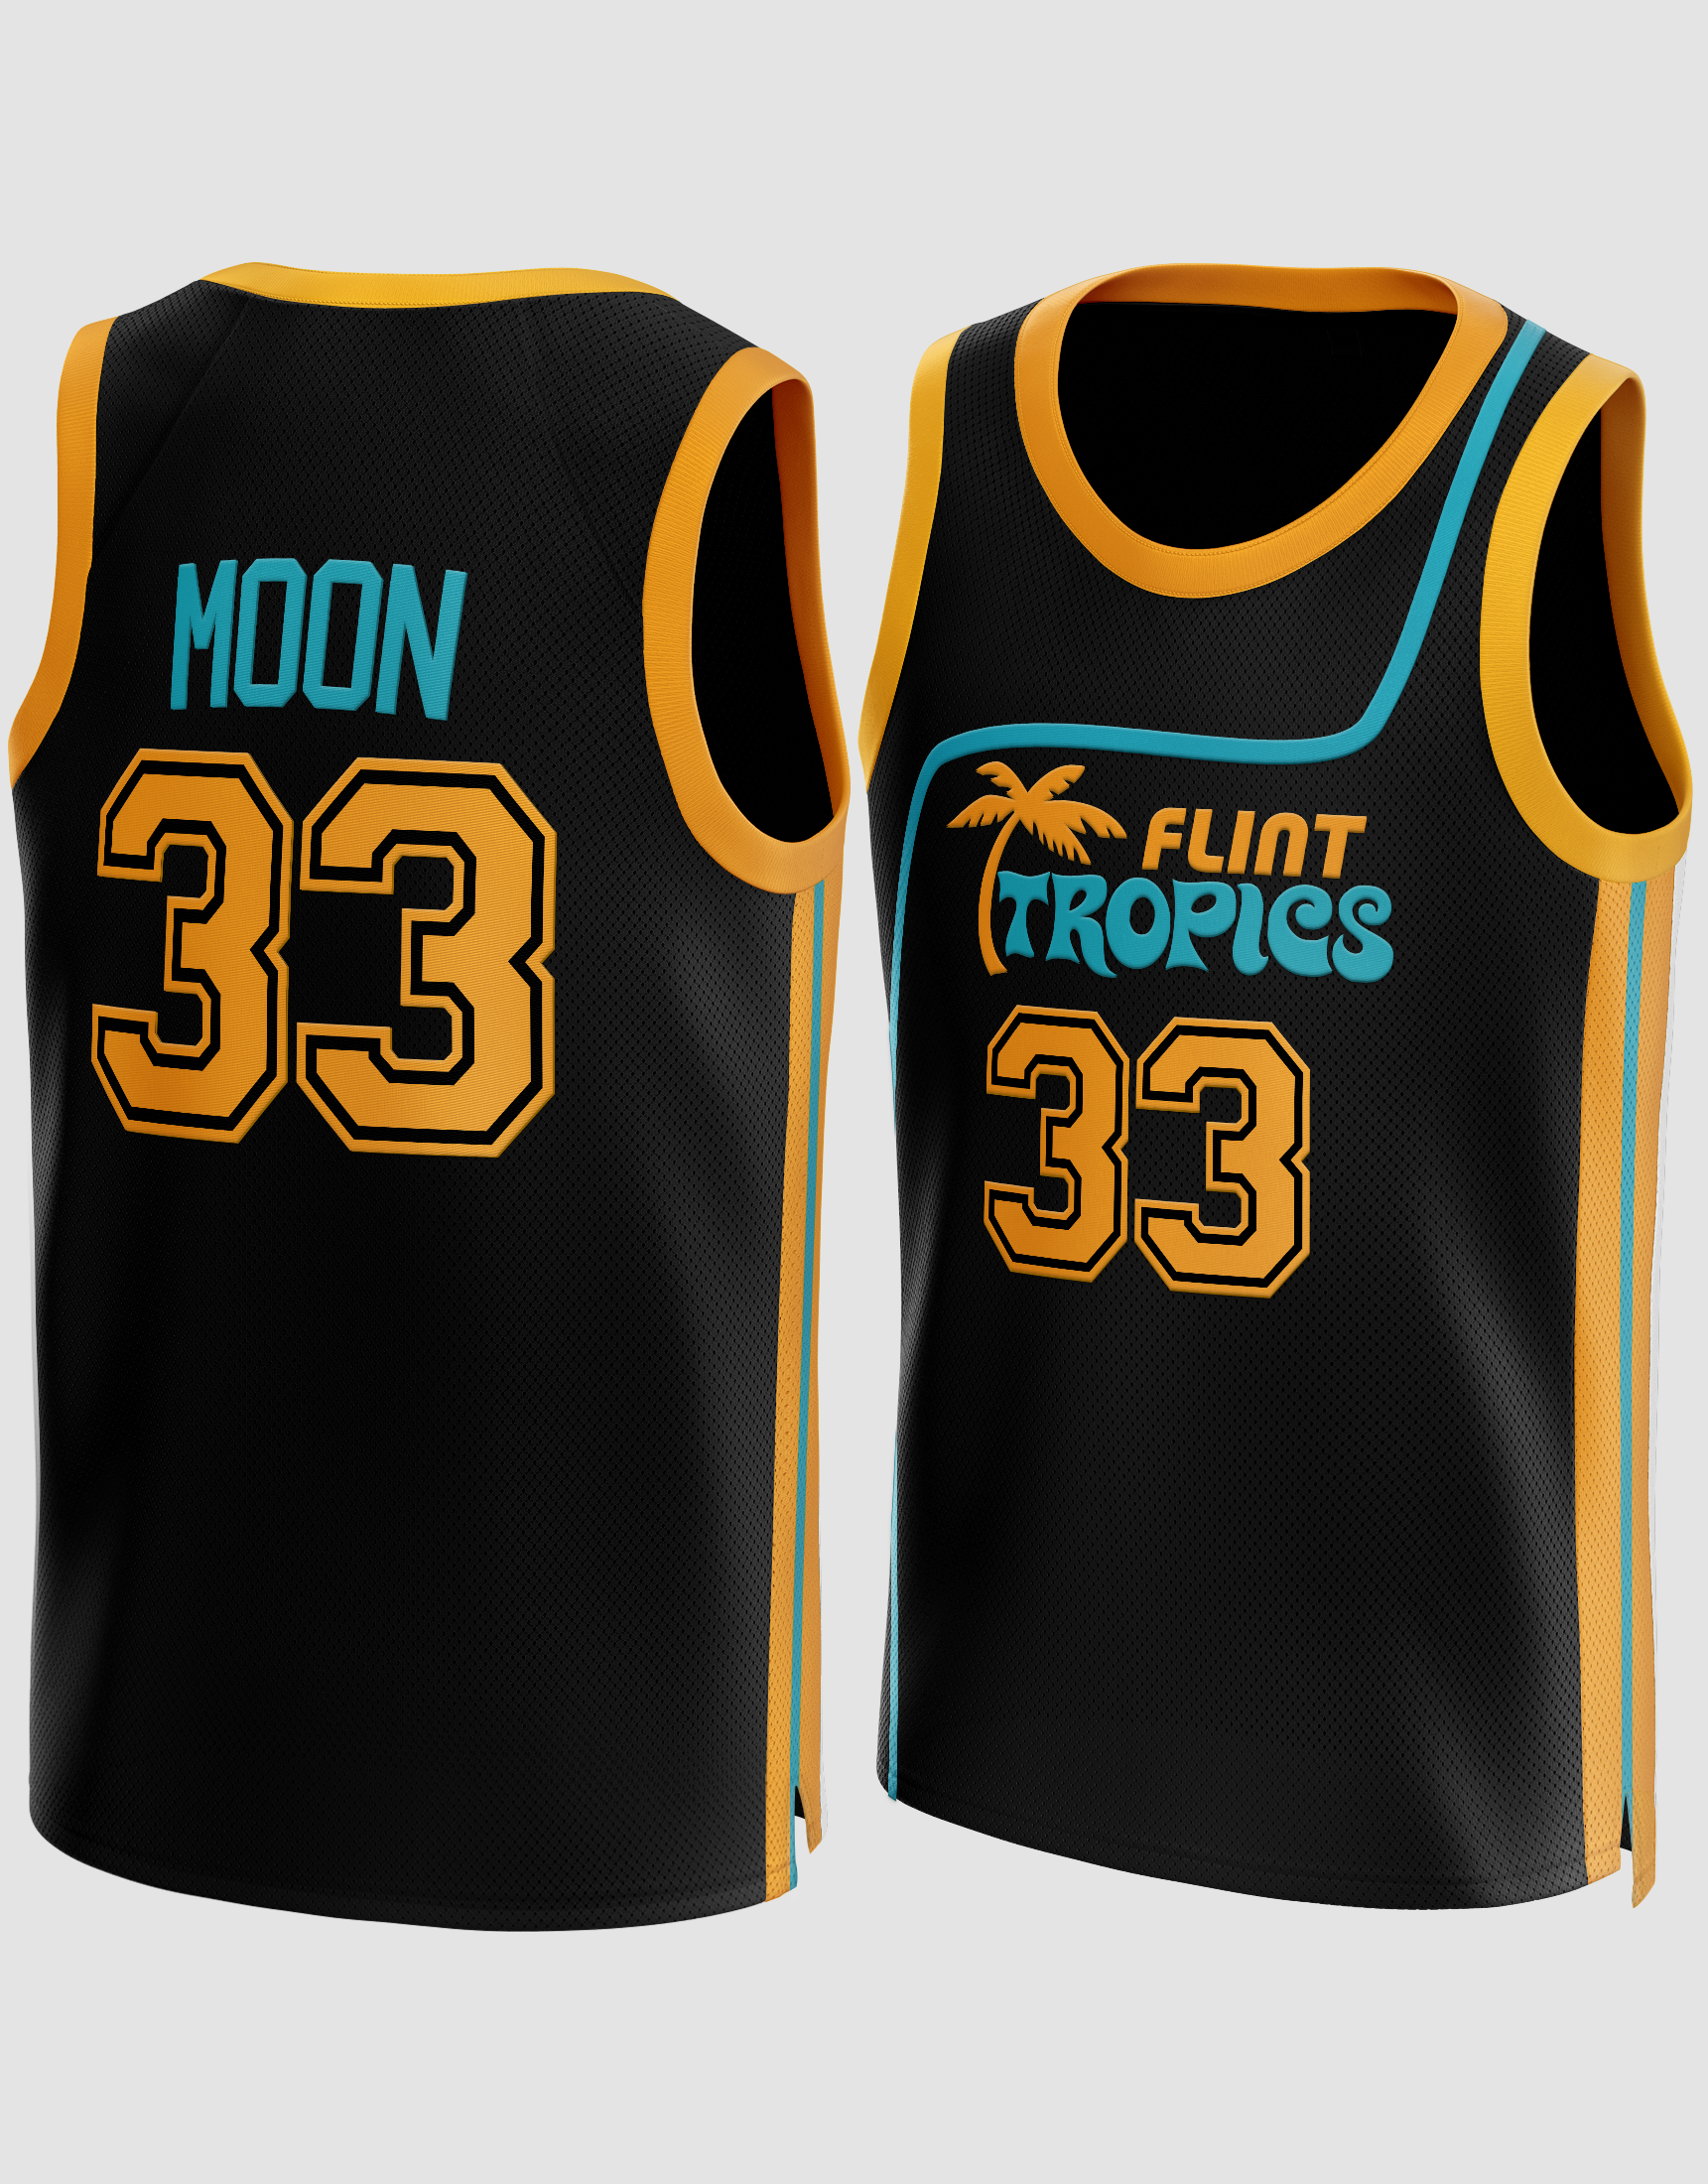 Flint Tropics 'Semi Pro' Jackie Moon Basketball Jersey *IN-STOCK*